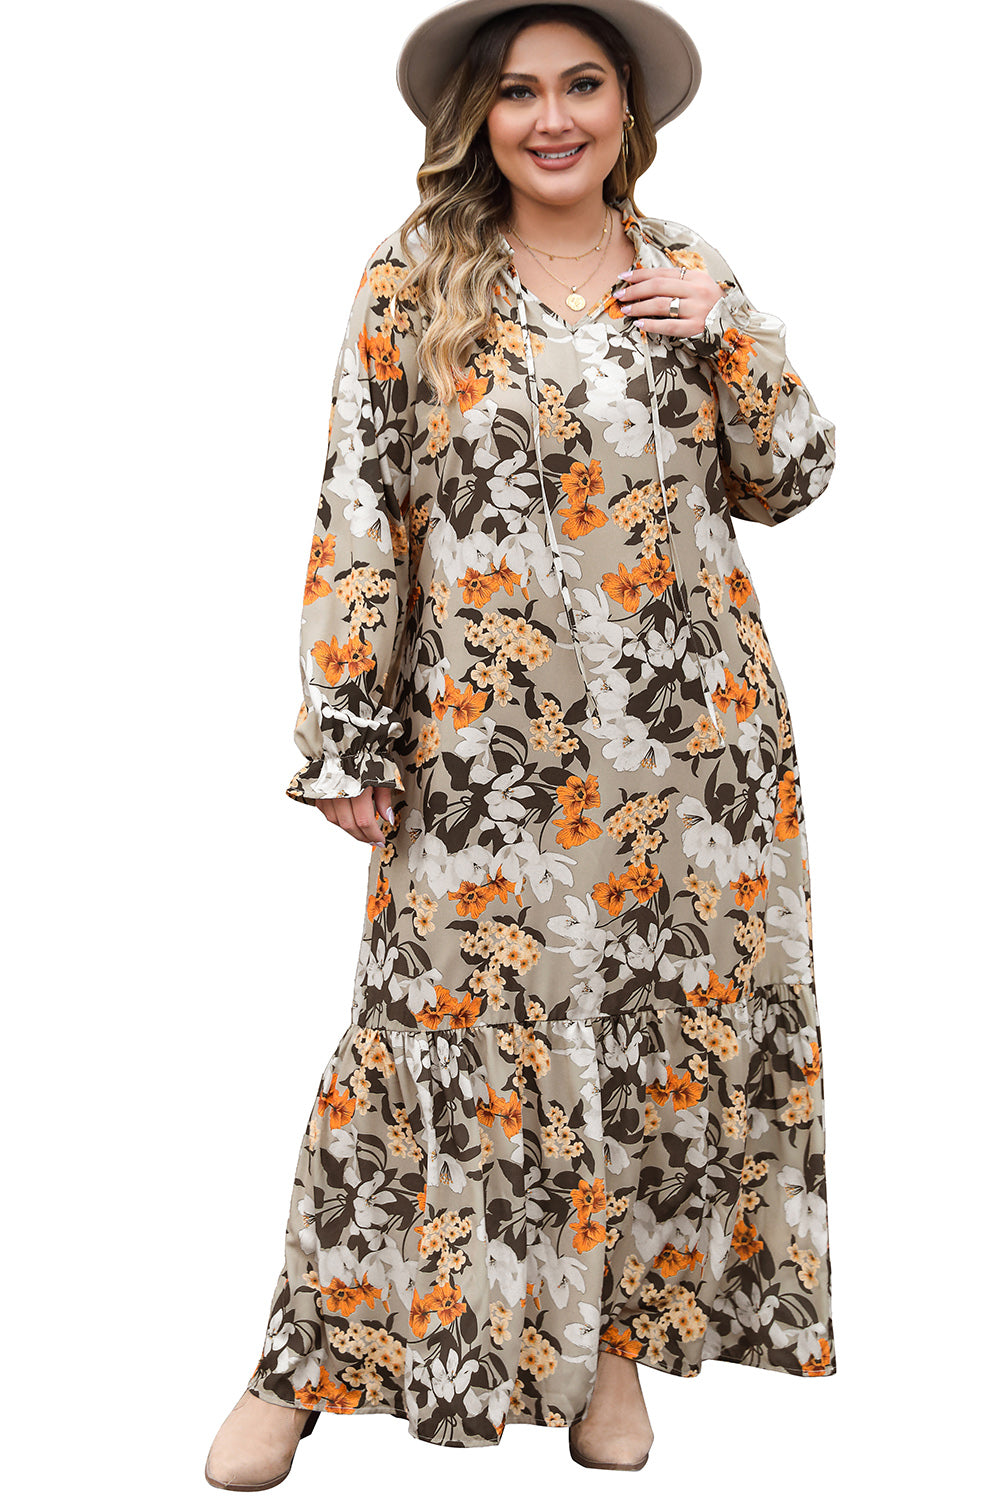 Višebojna boho haljina s cvjetnim uzorkom, maksi veličine